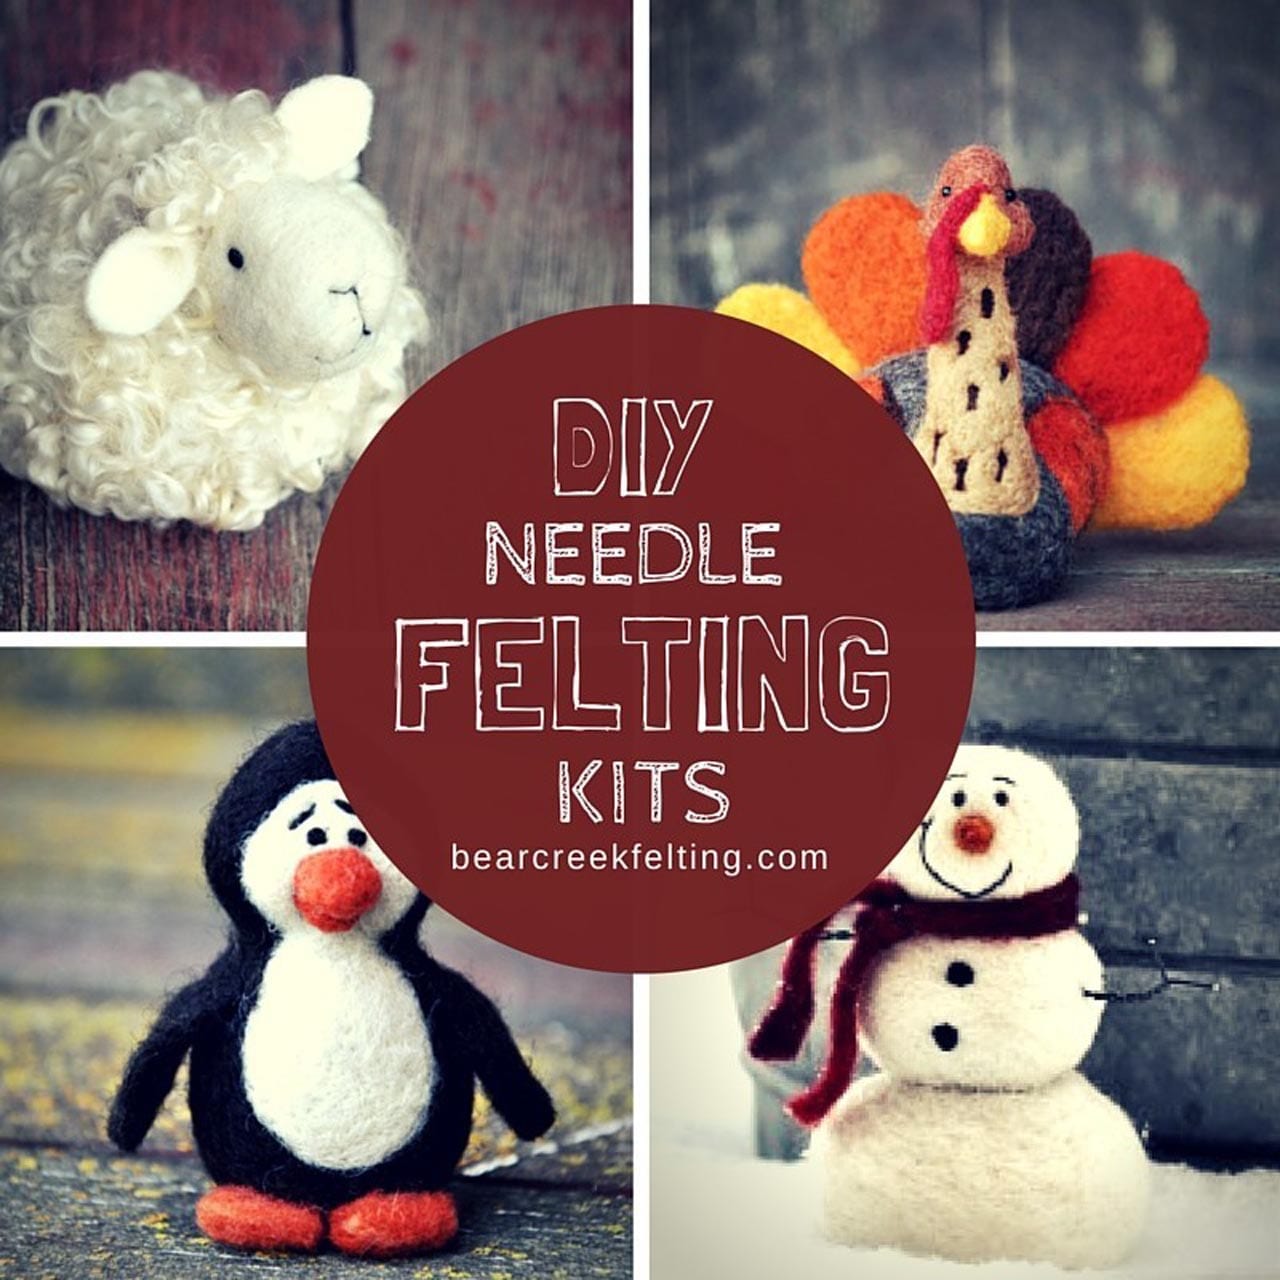 DIY needle felting kits